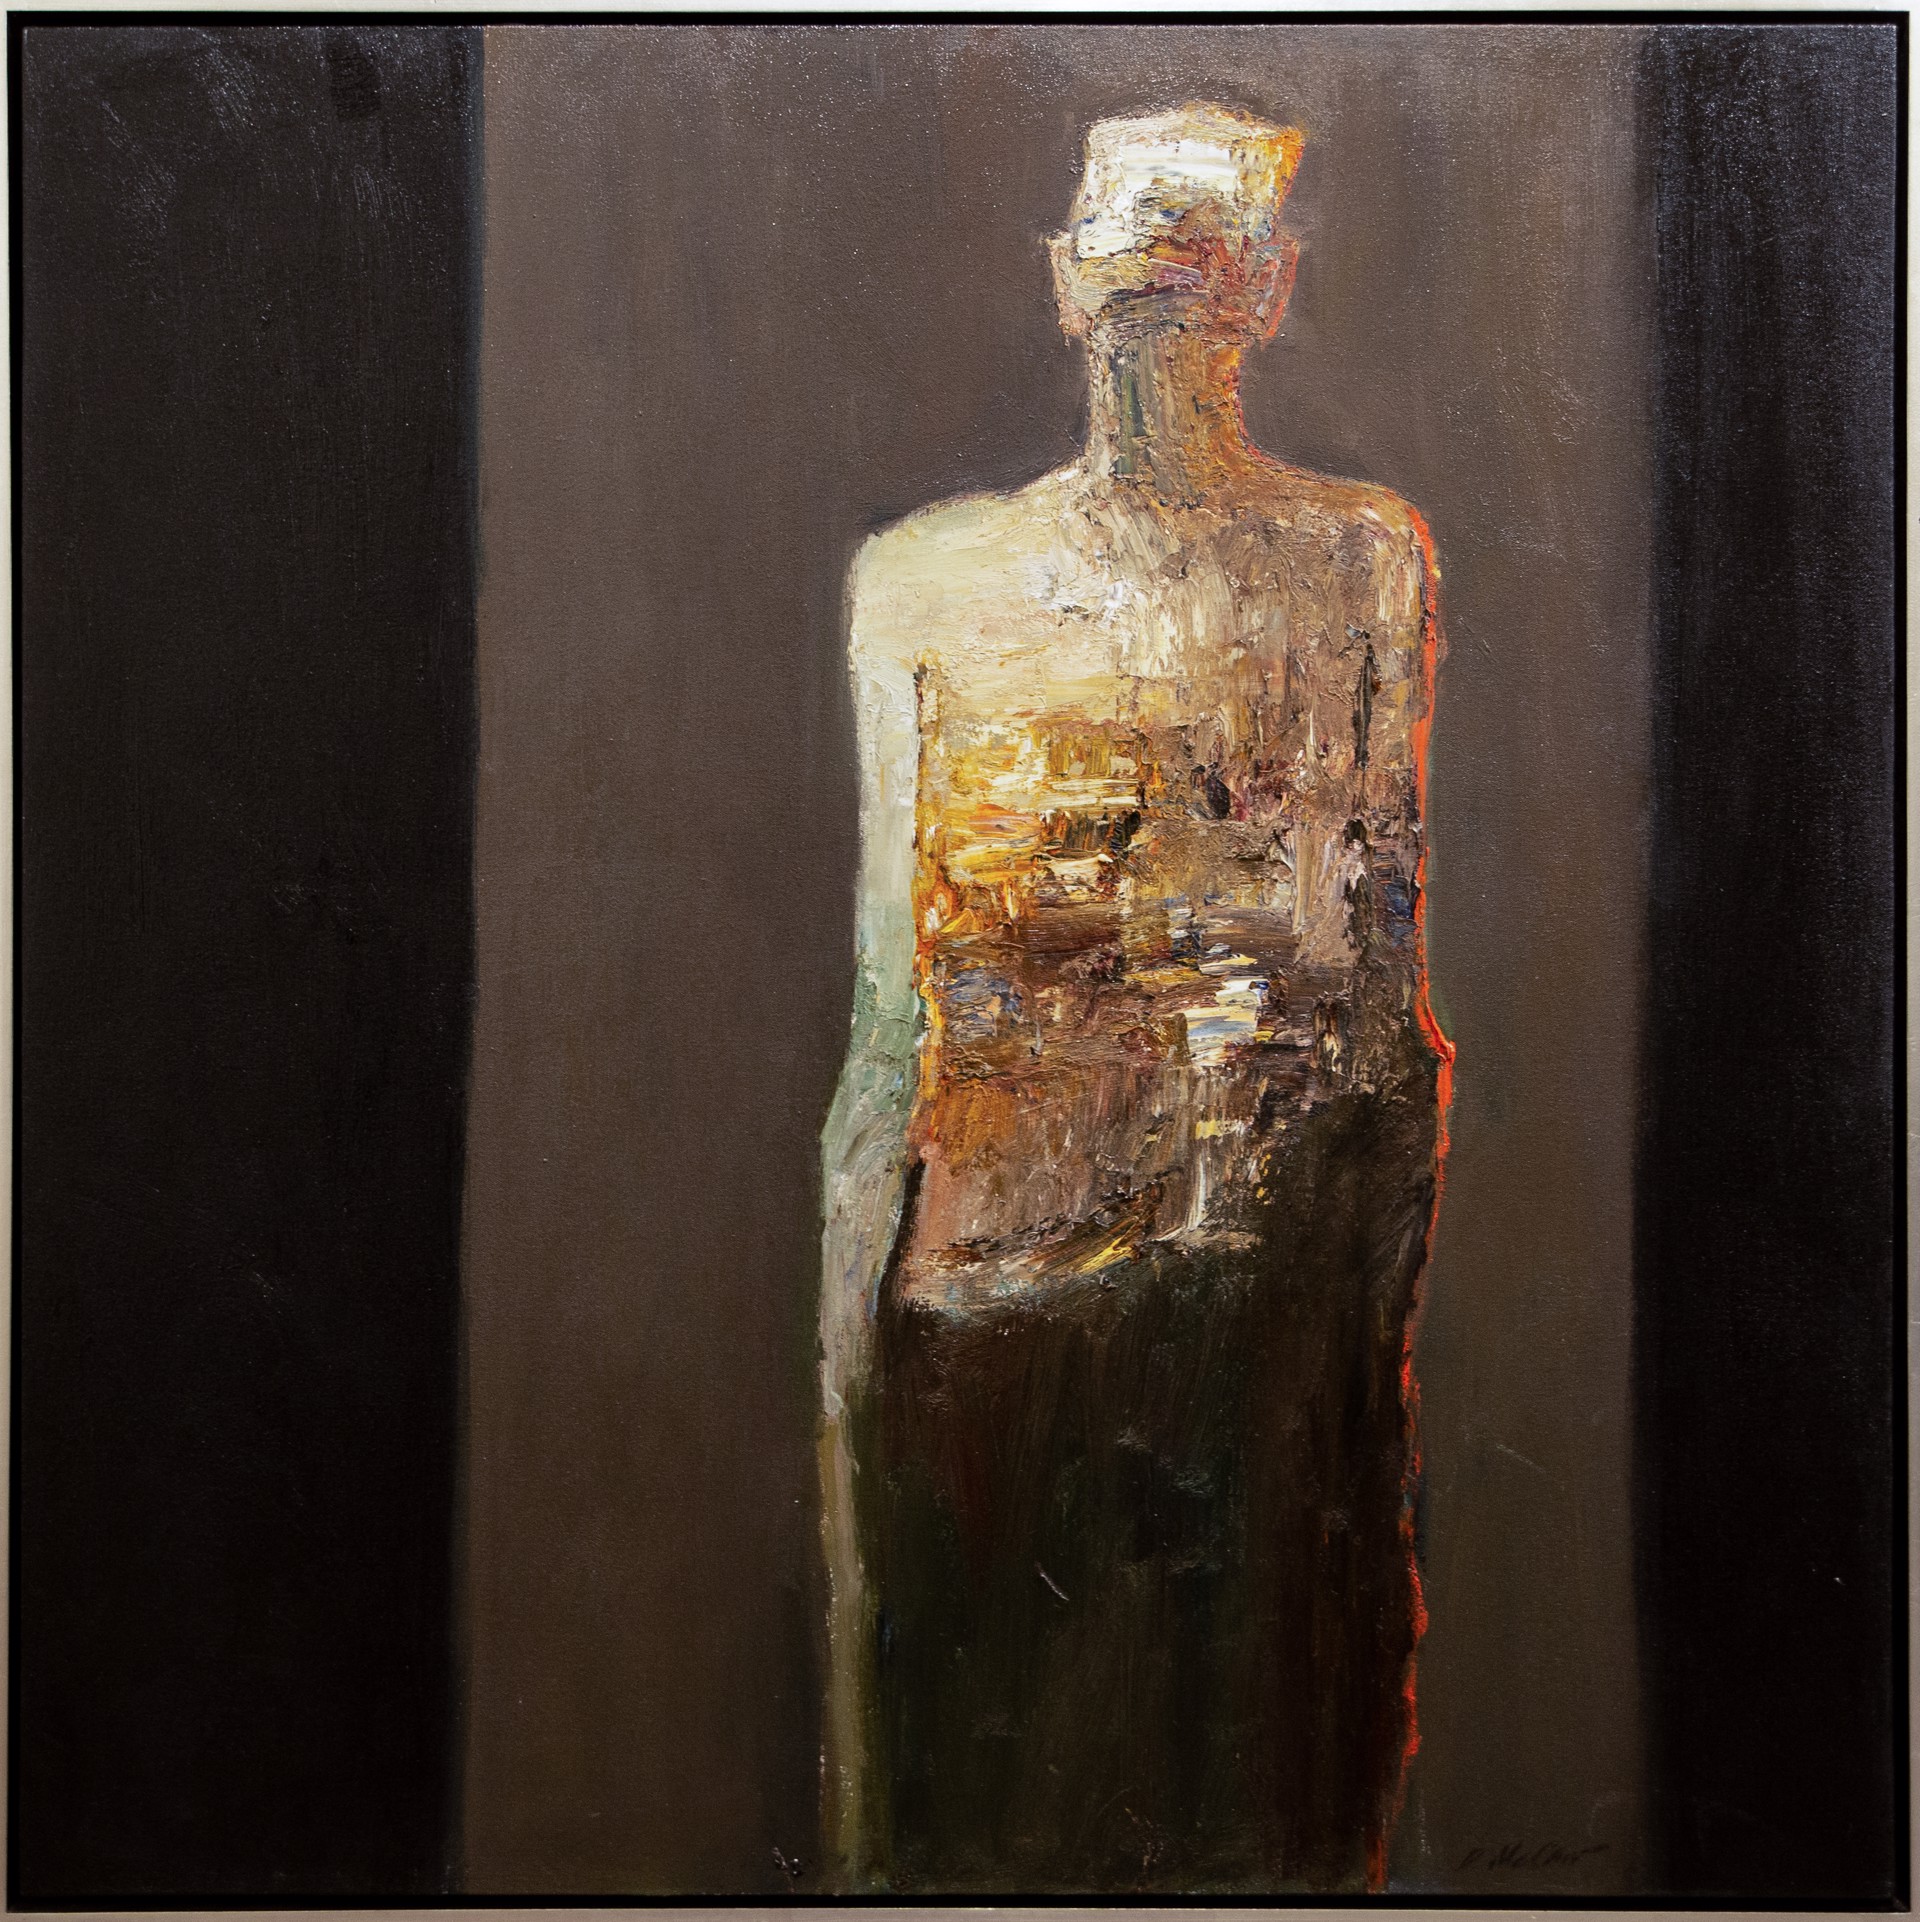 Standing Figure by Dan McCaw